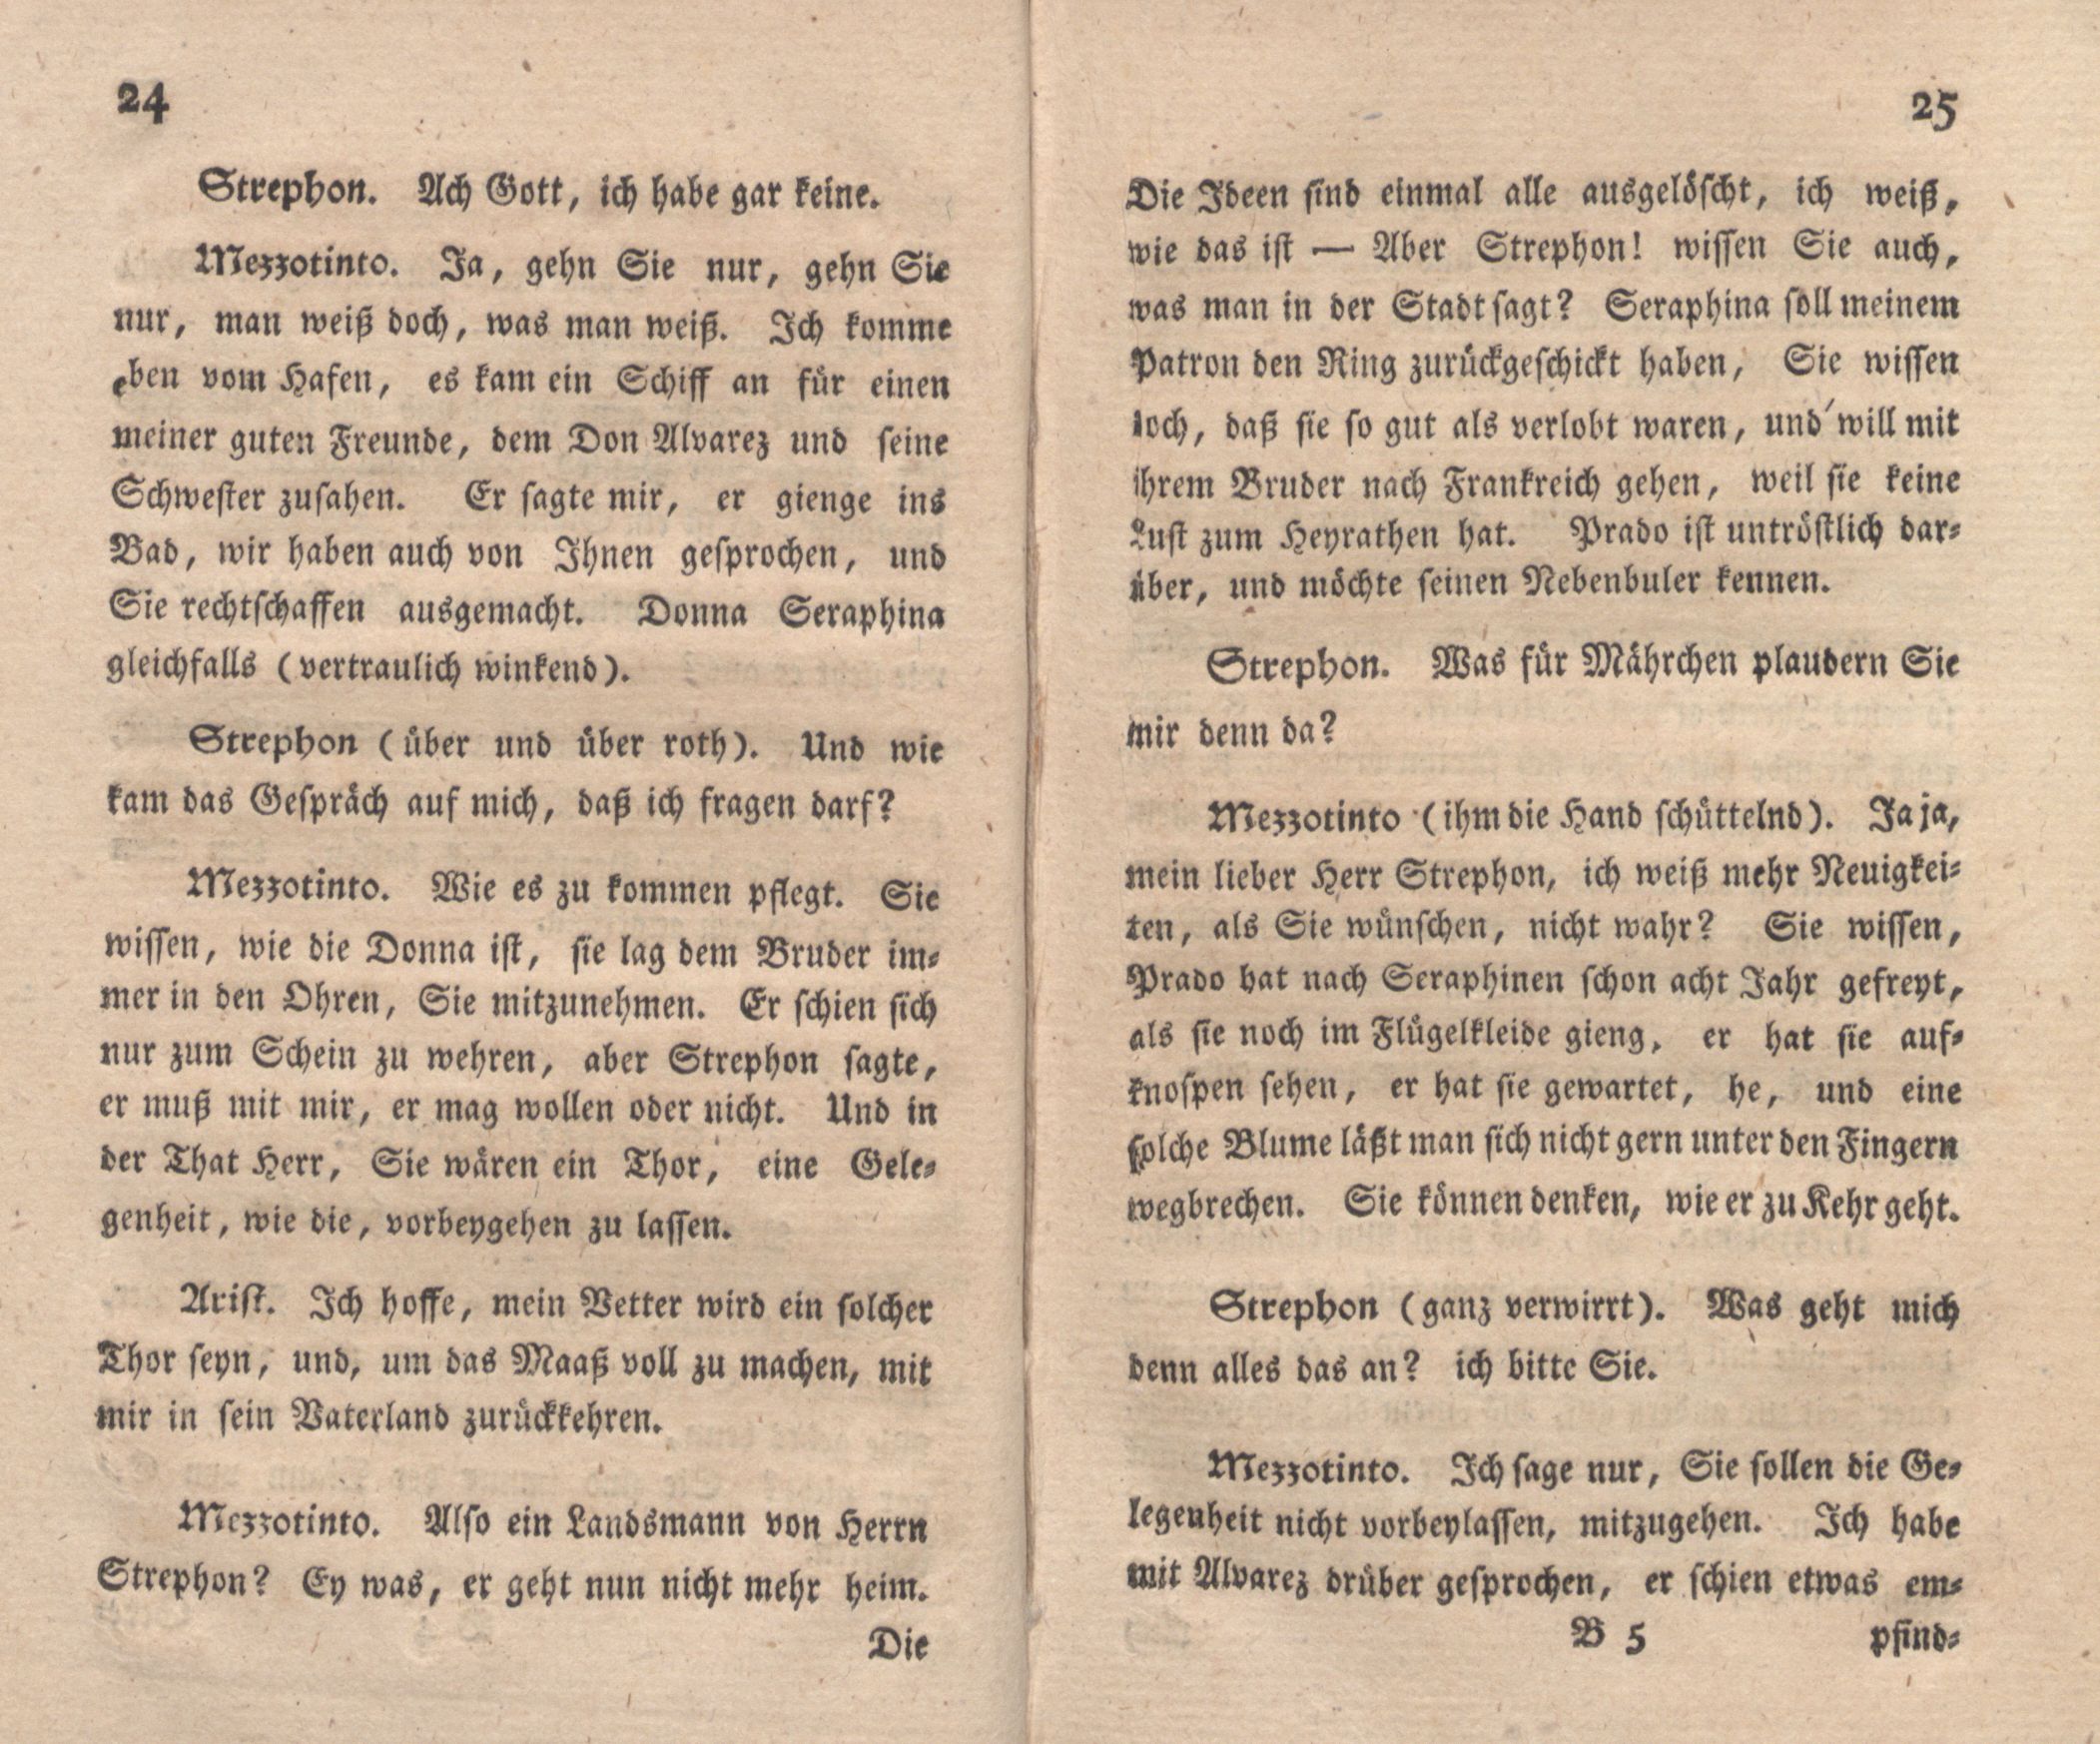 Die Freunde machen den Philosophen (1776) | 14. (24-25) Main body of text